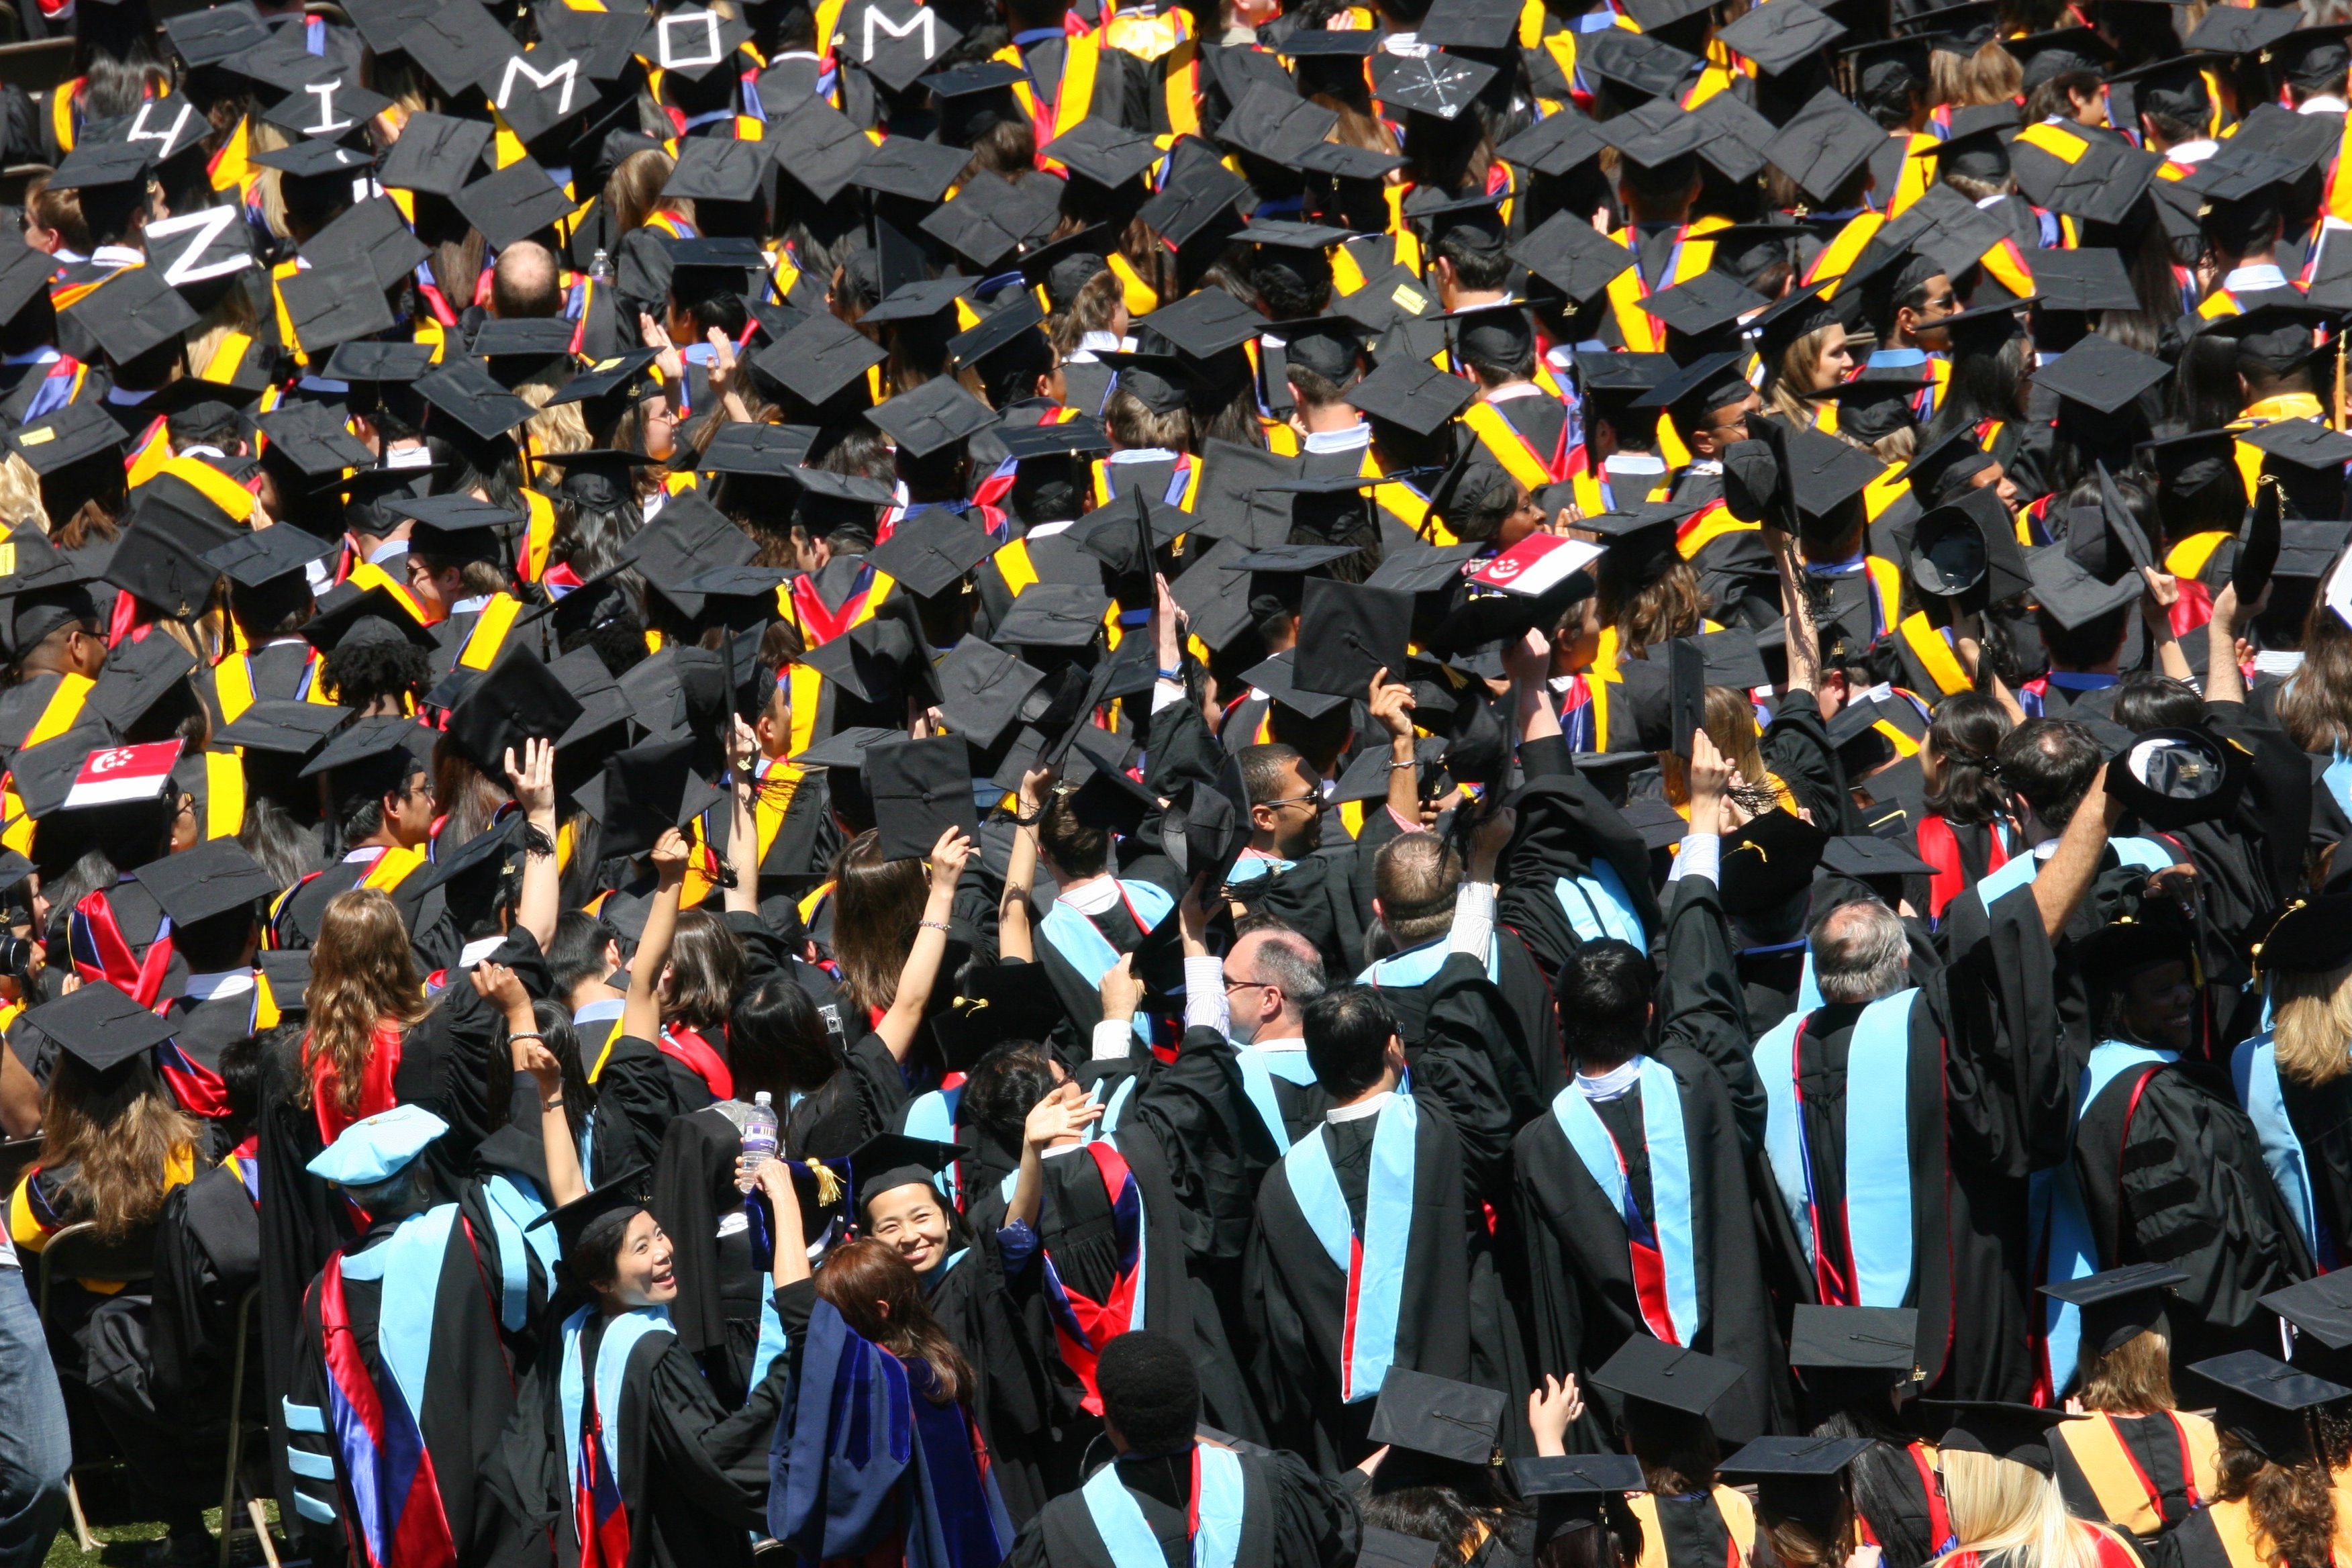 graduates-1177183